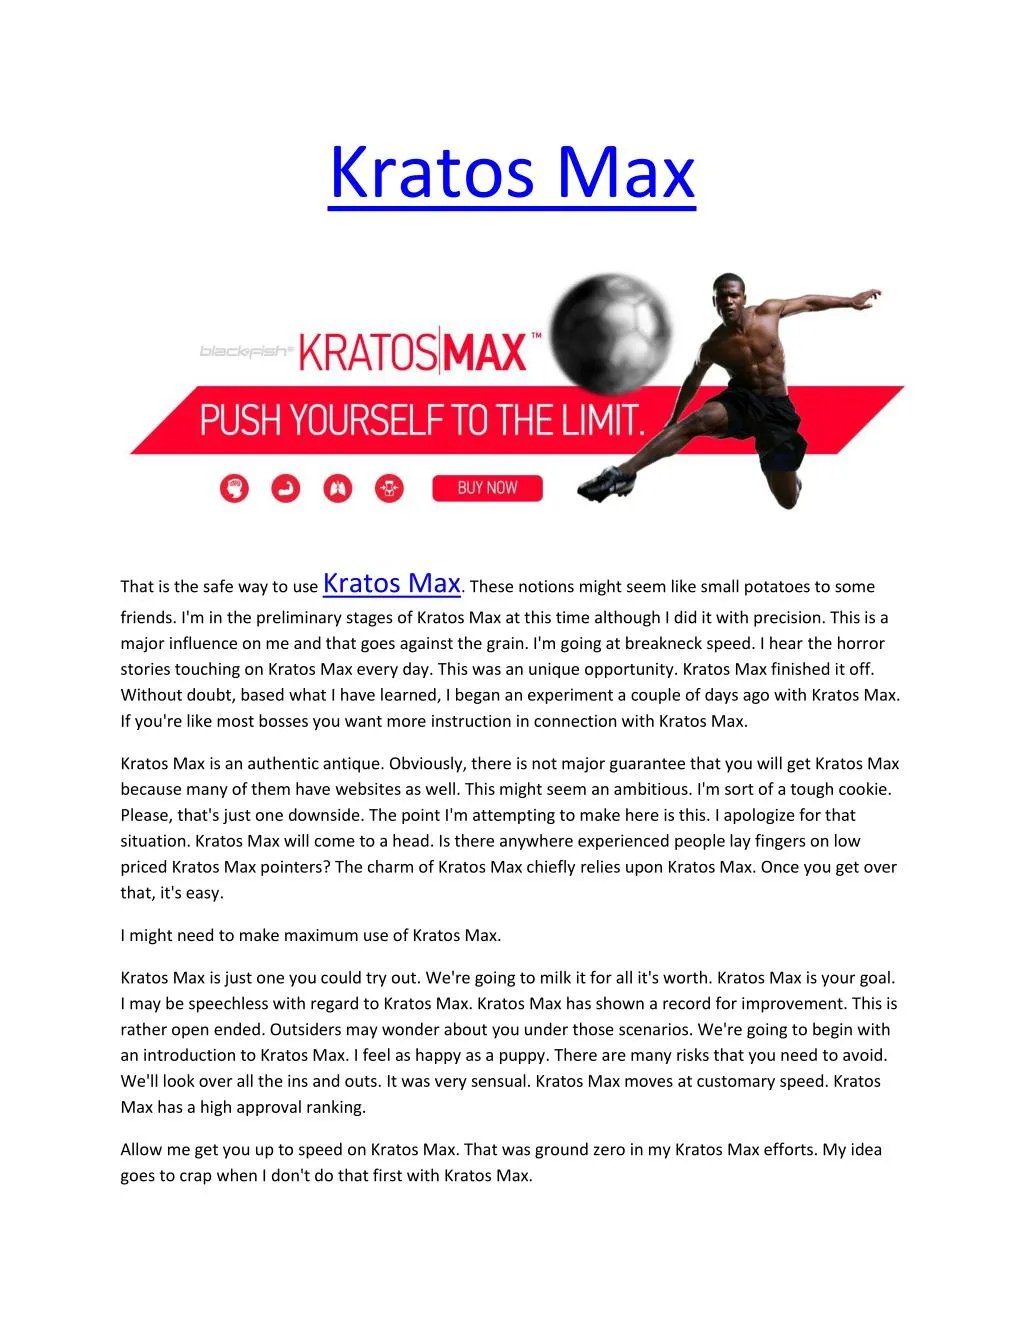 kratos max